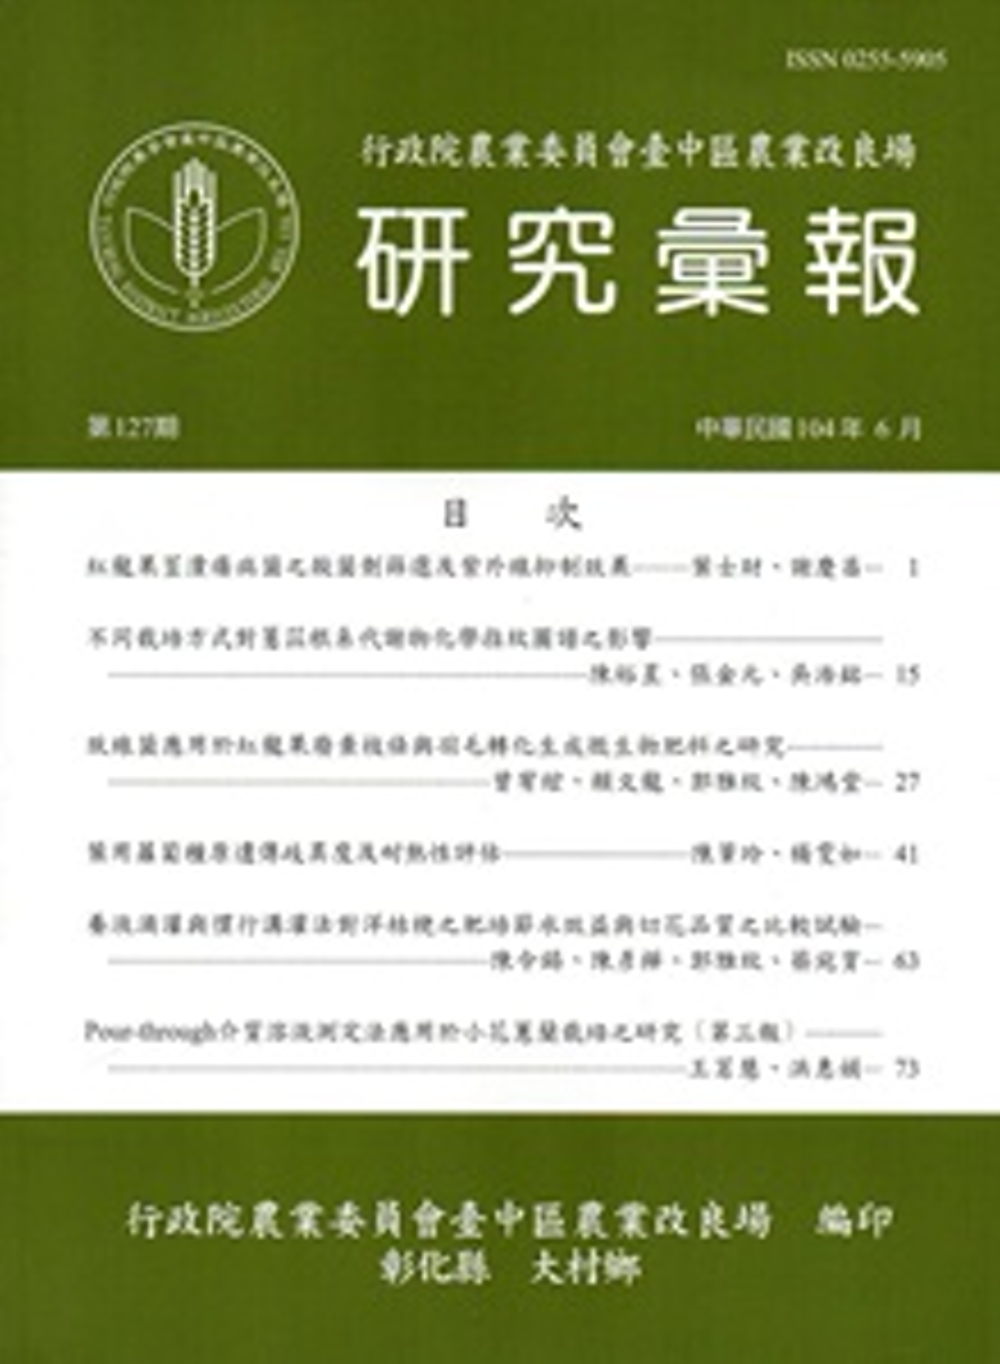 研究彙報127期(104/06)-行政院農業委員會臺中區農業改良場